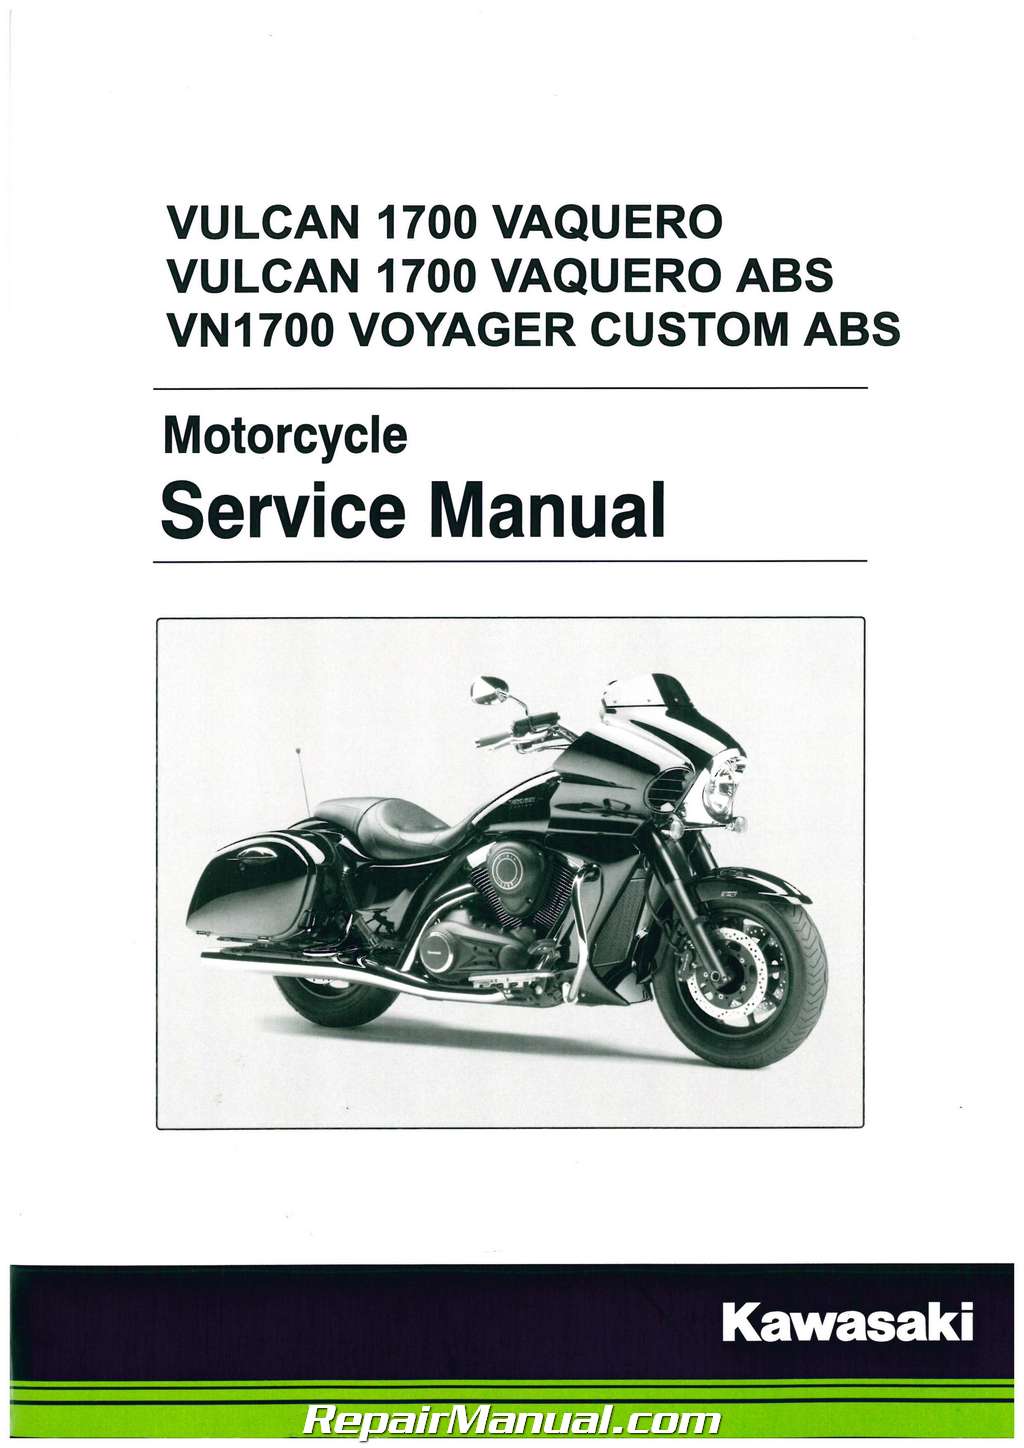 Rå Forge af 2011-2020 Kawasaki VN1700 Vulcan 1700 Vaquero Motorcycle Service Manual